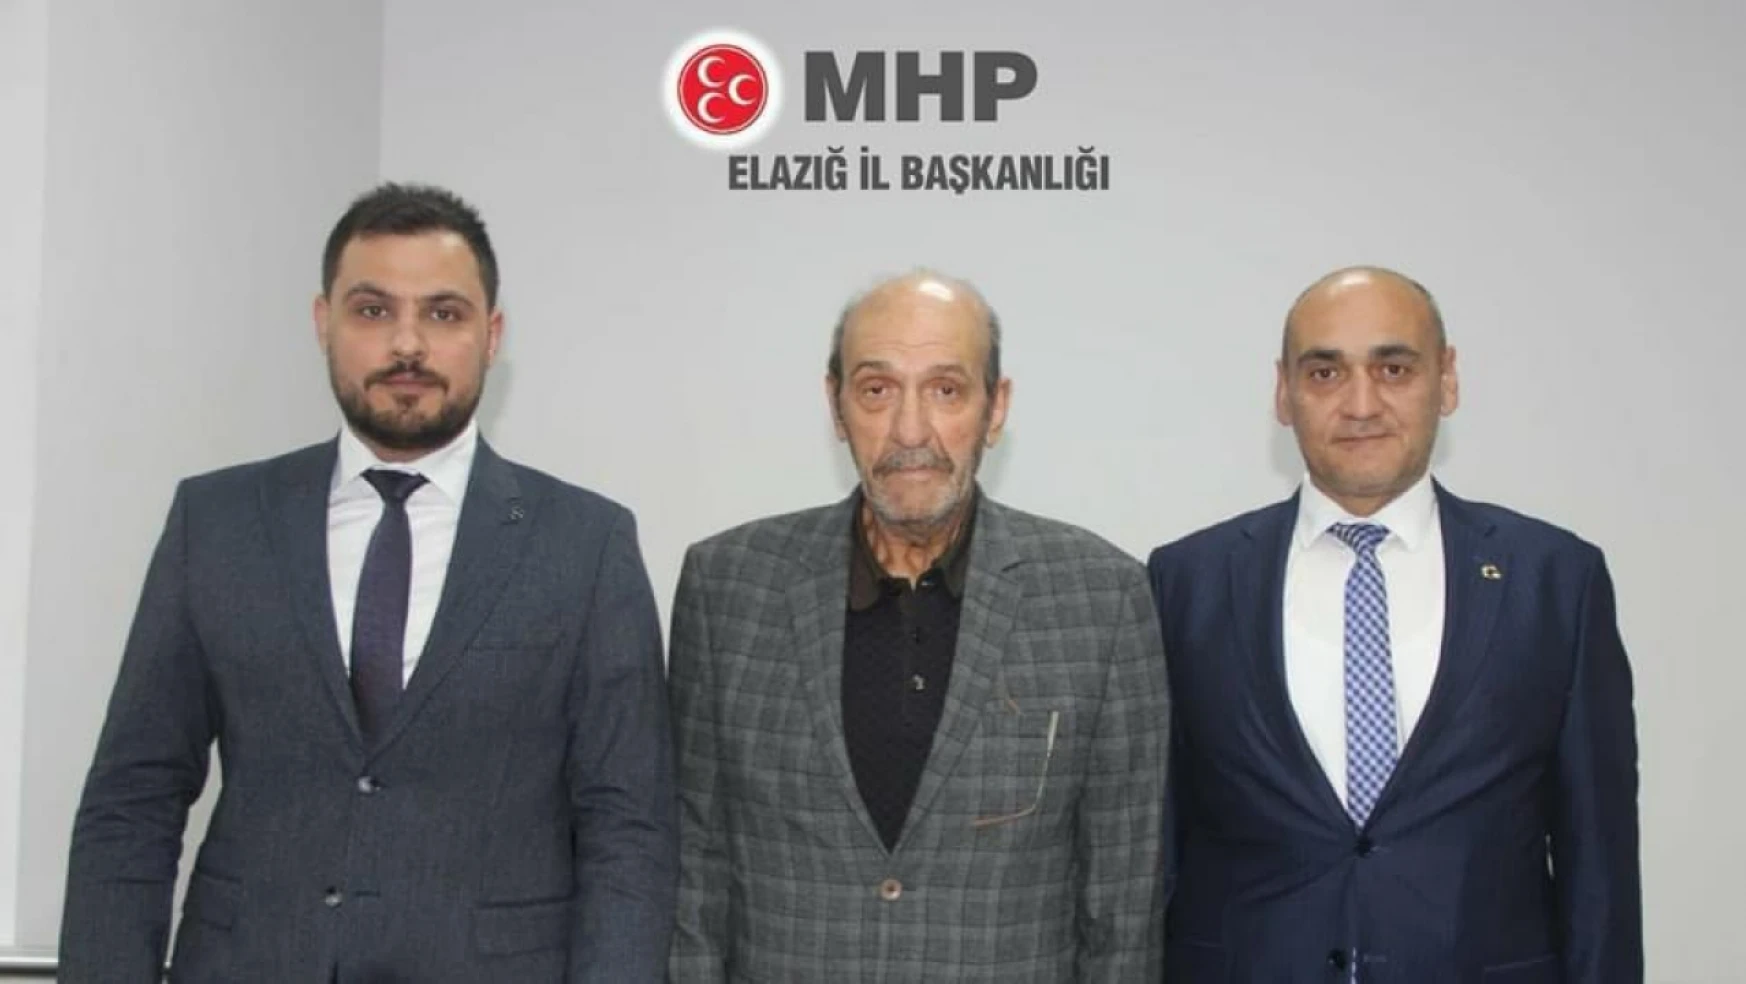 MHP Elazığ SKM başkanlığı'na Behçet Susmaz getirildi